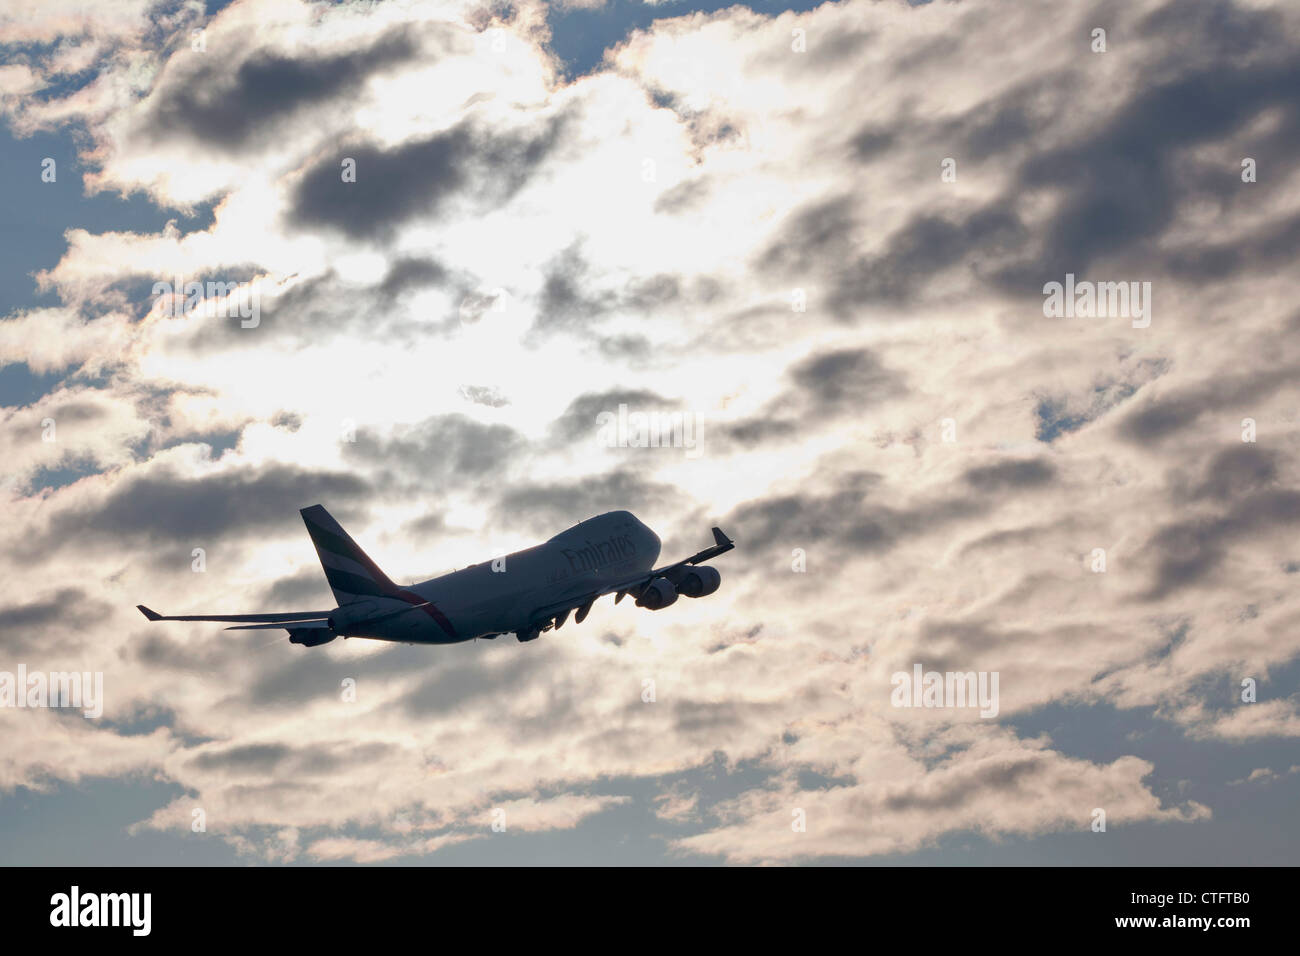 Den Niederlanden, Haarlemmermeer, in der Nähe von Amsterdam Schiphol Flughafen. Air Emirates Flugzeug abheben. Stockfoto